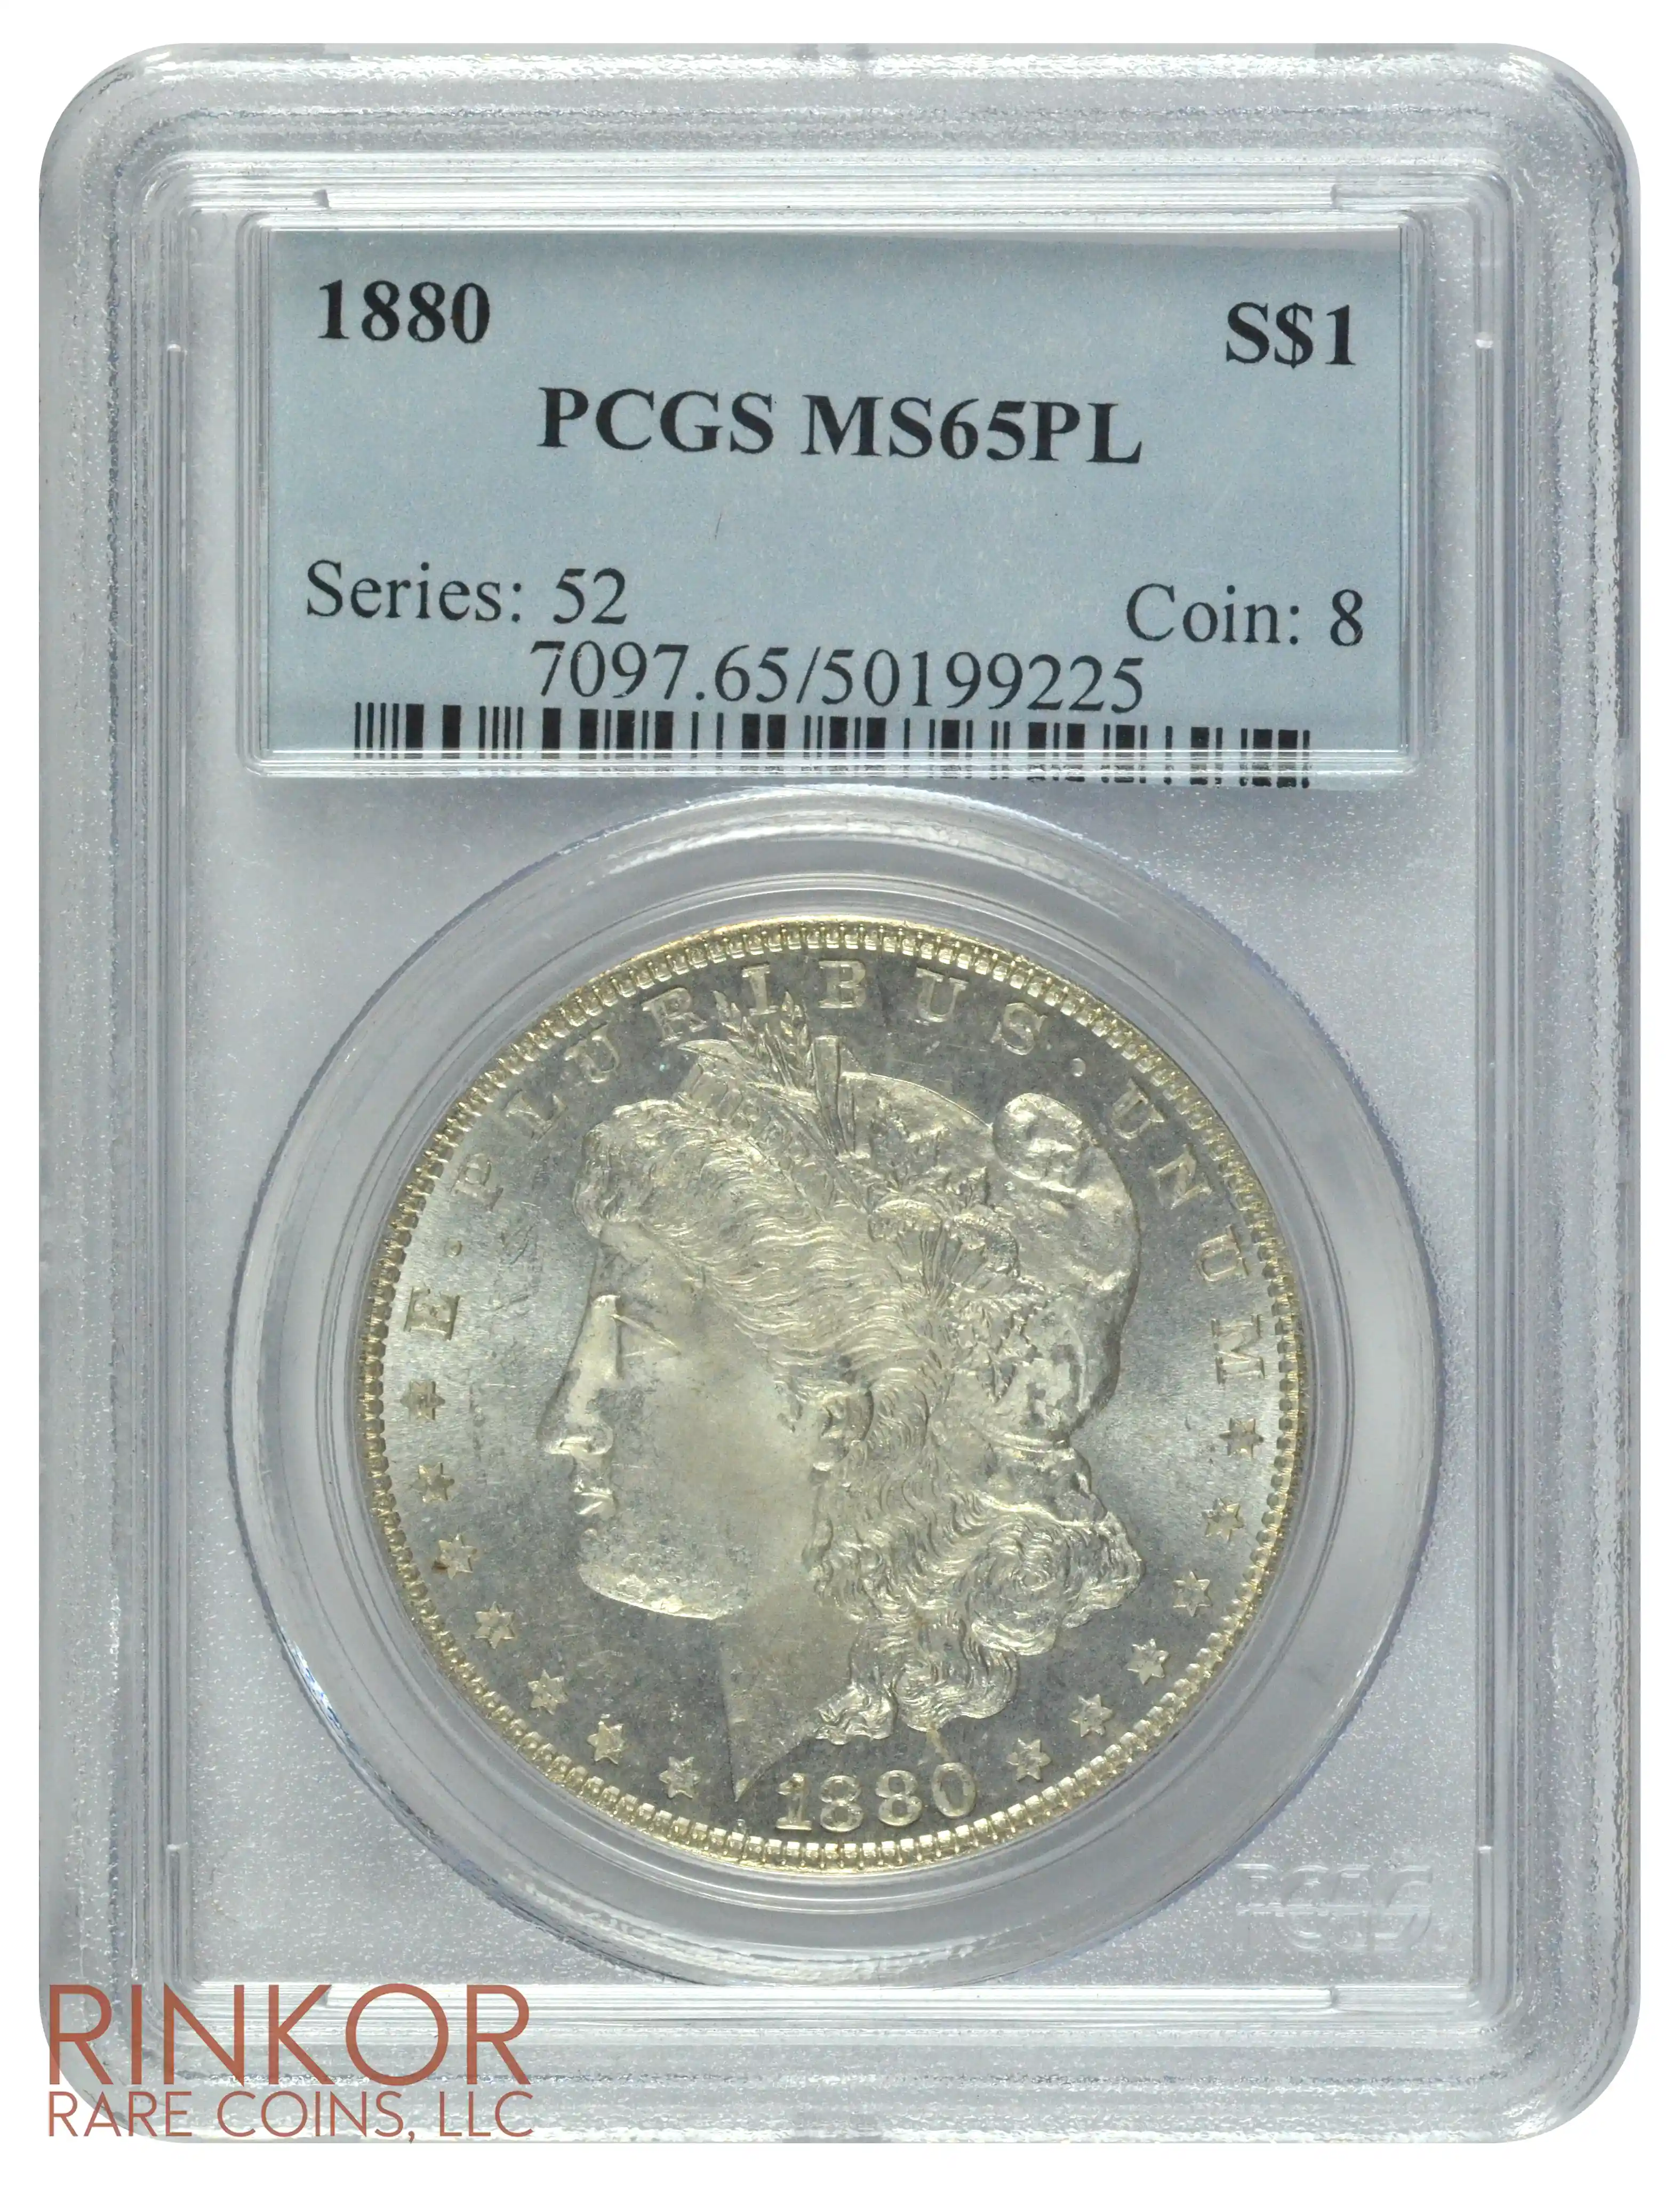 1880 $1 PCGS MS 65 PL